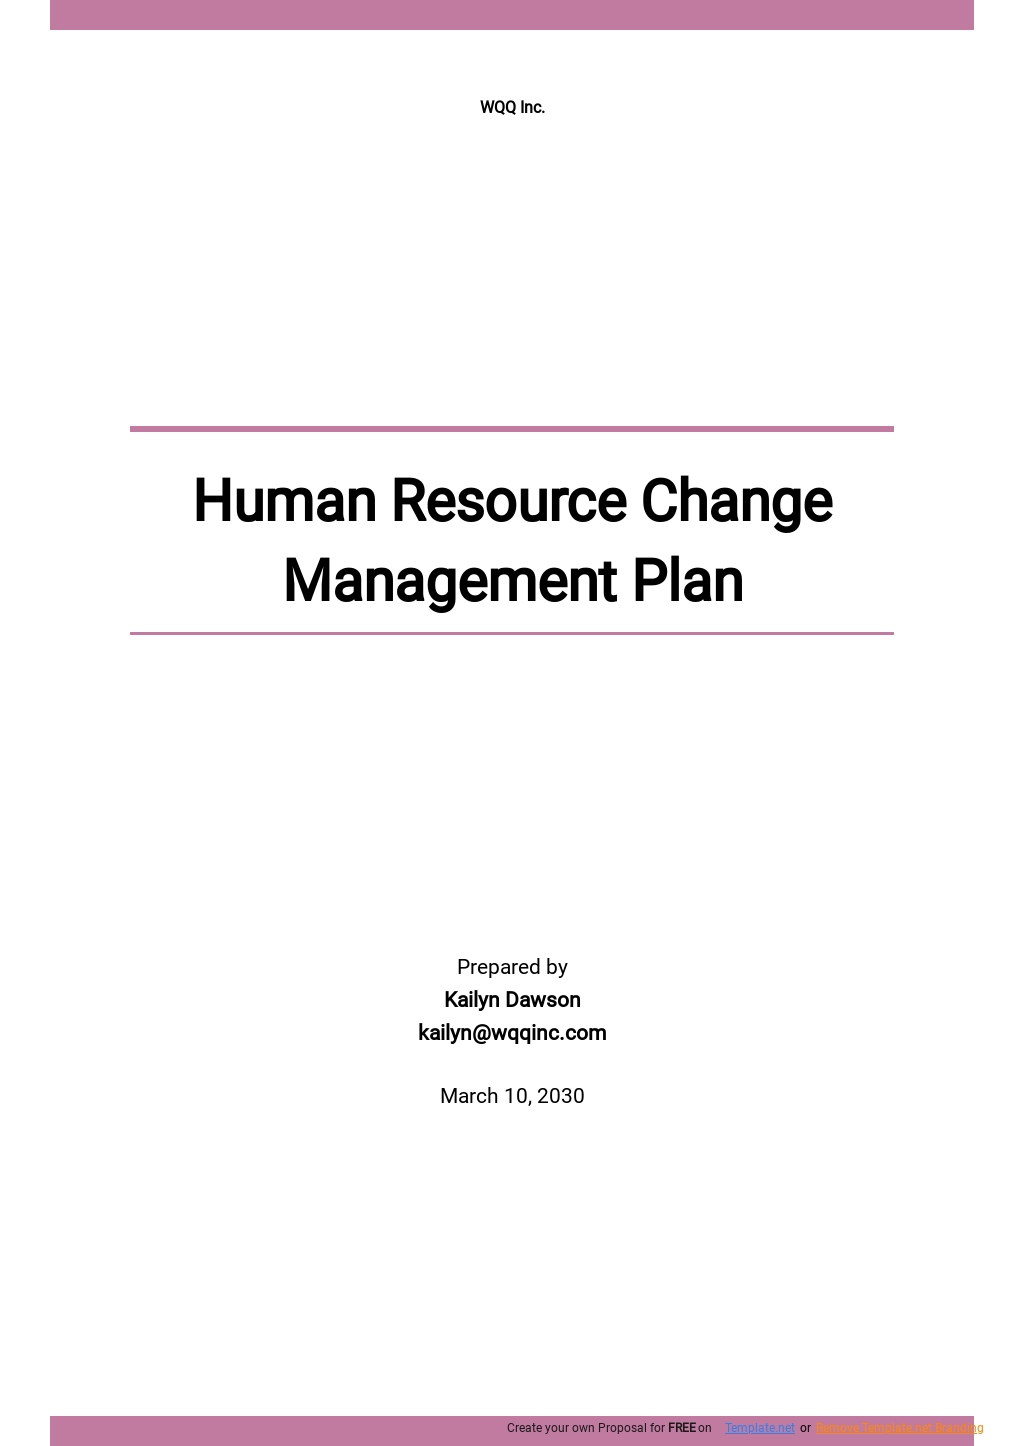 Change Management Plans